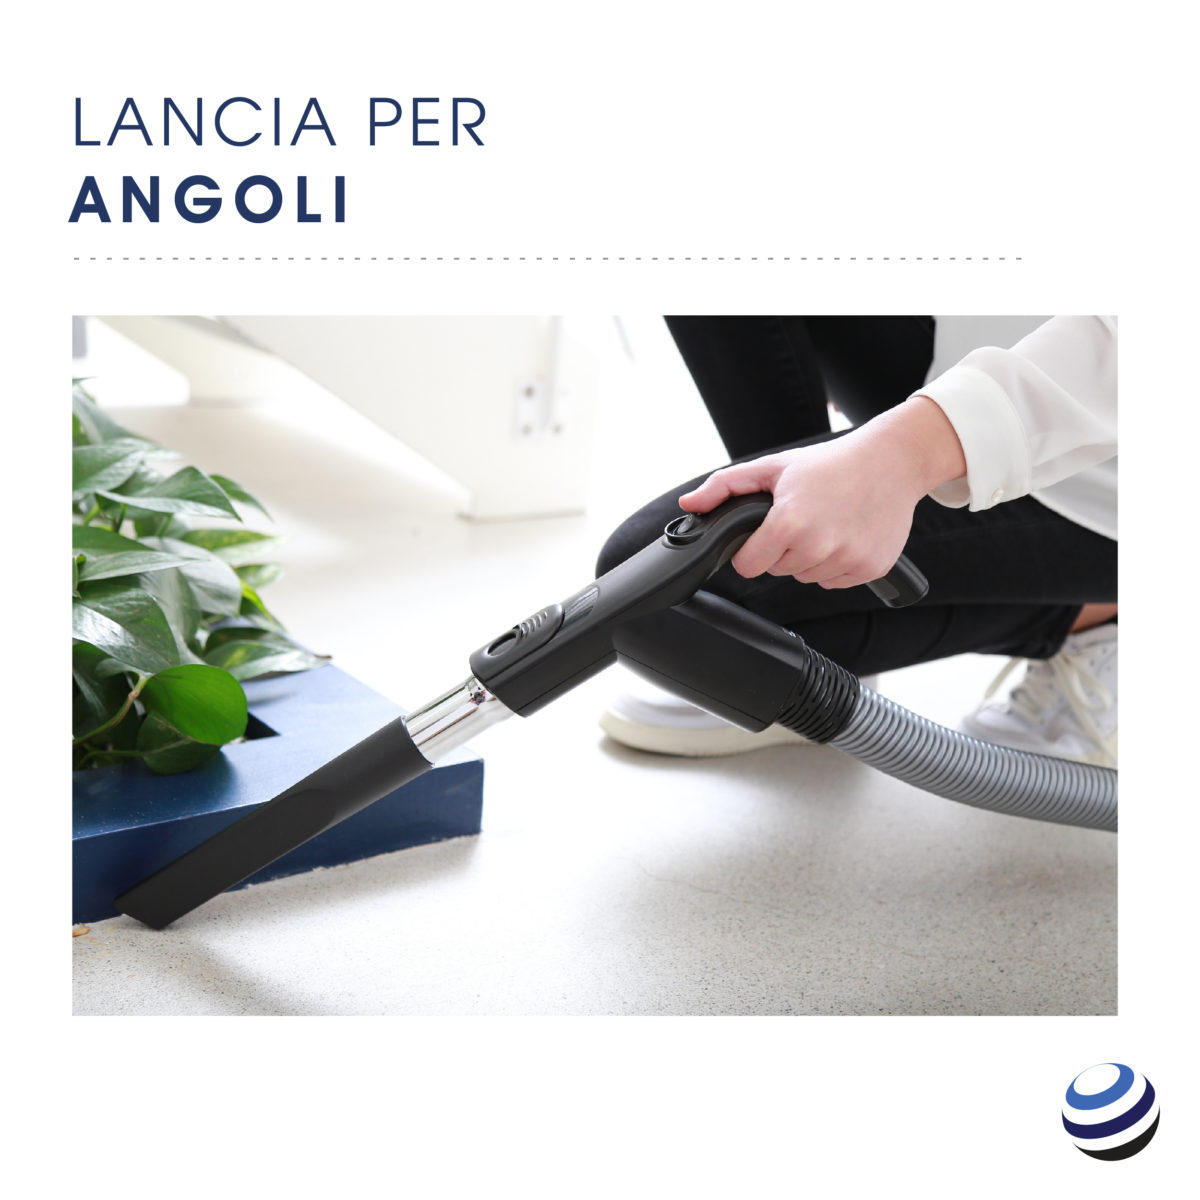 La lancia per angoli viene utilizzata per pulire l'angolo di una casa.